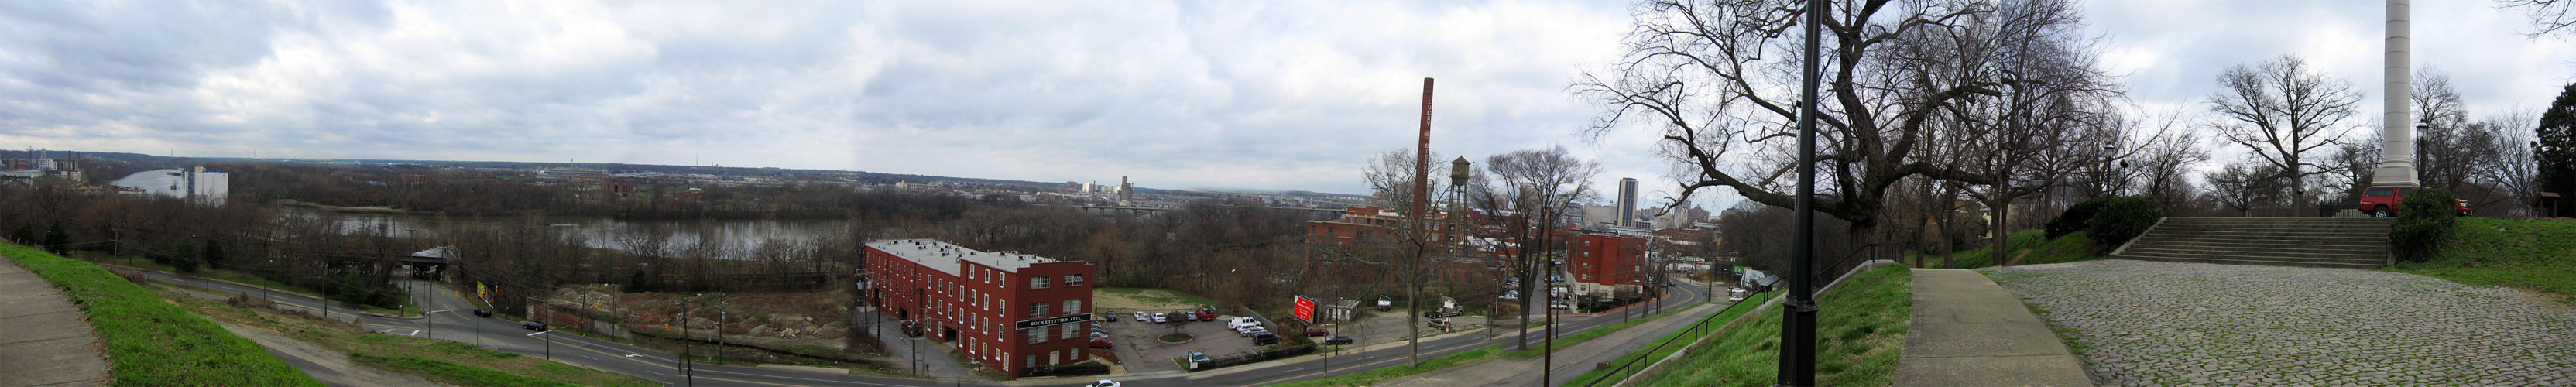 Panorama - Richmond, Virginia